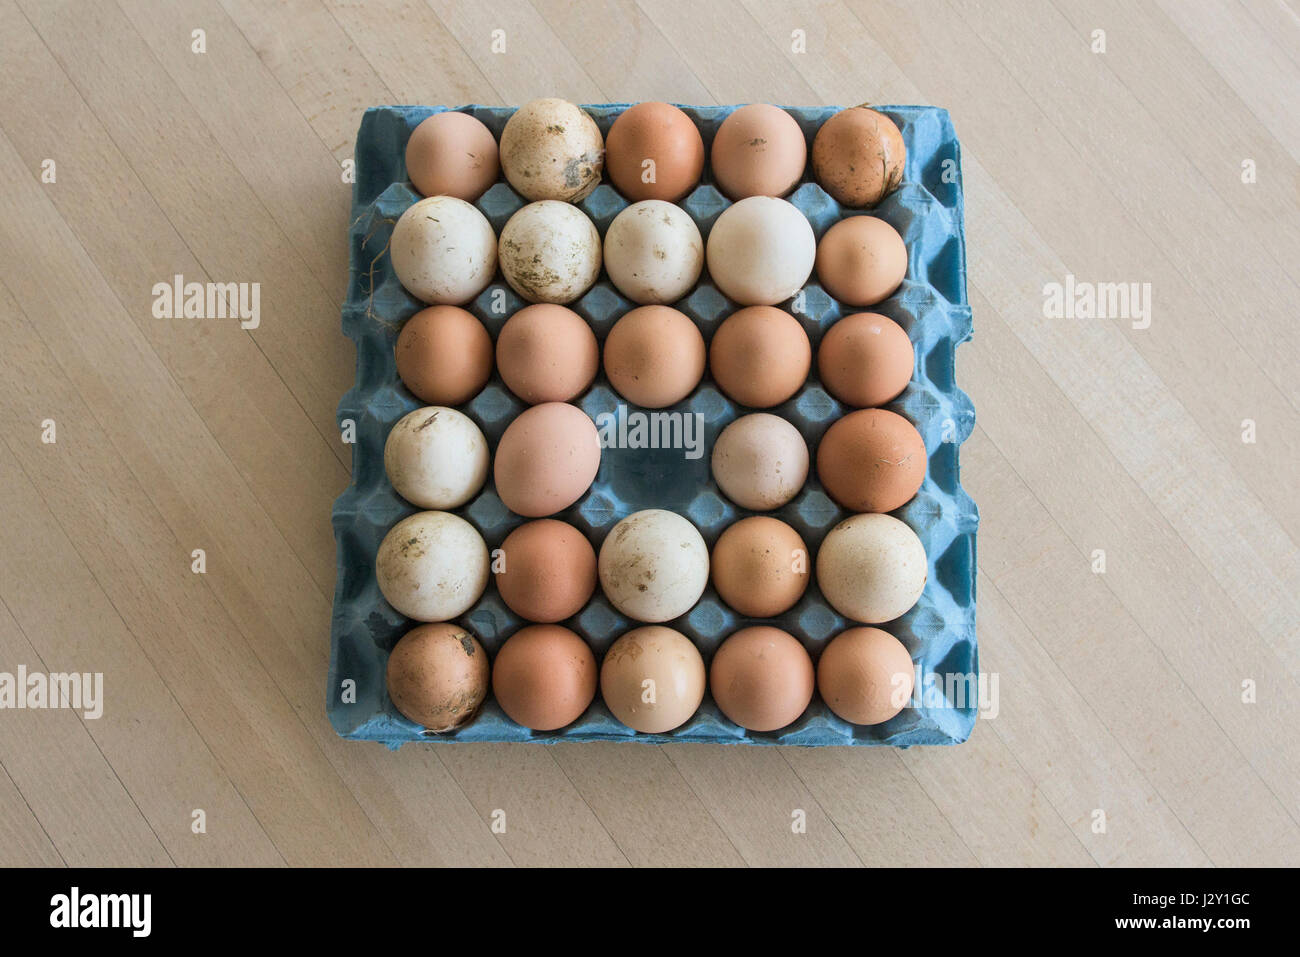 Ein Tablett sehr frische ungewaschene Eier Schalen natürlichen Natur Quelle von Protein gratis Angebot Eiern verwendet Bio Eierschale Eierschalen eine entfernt Stockfoto